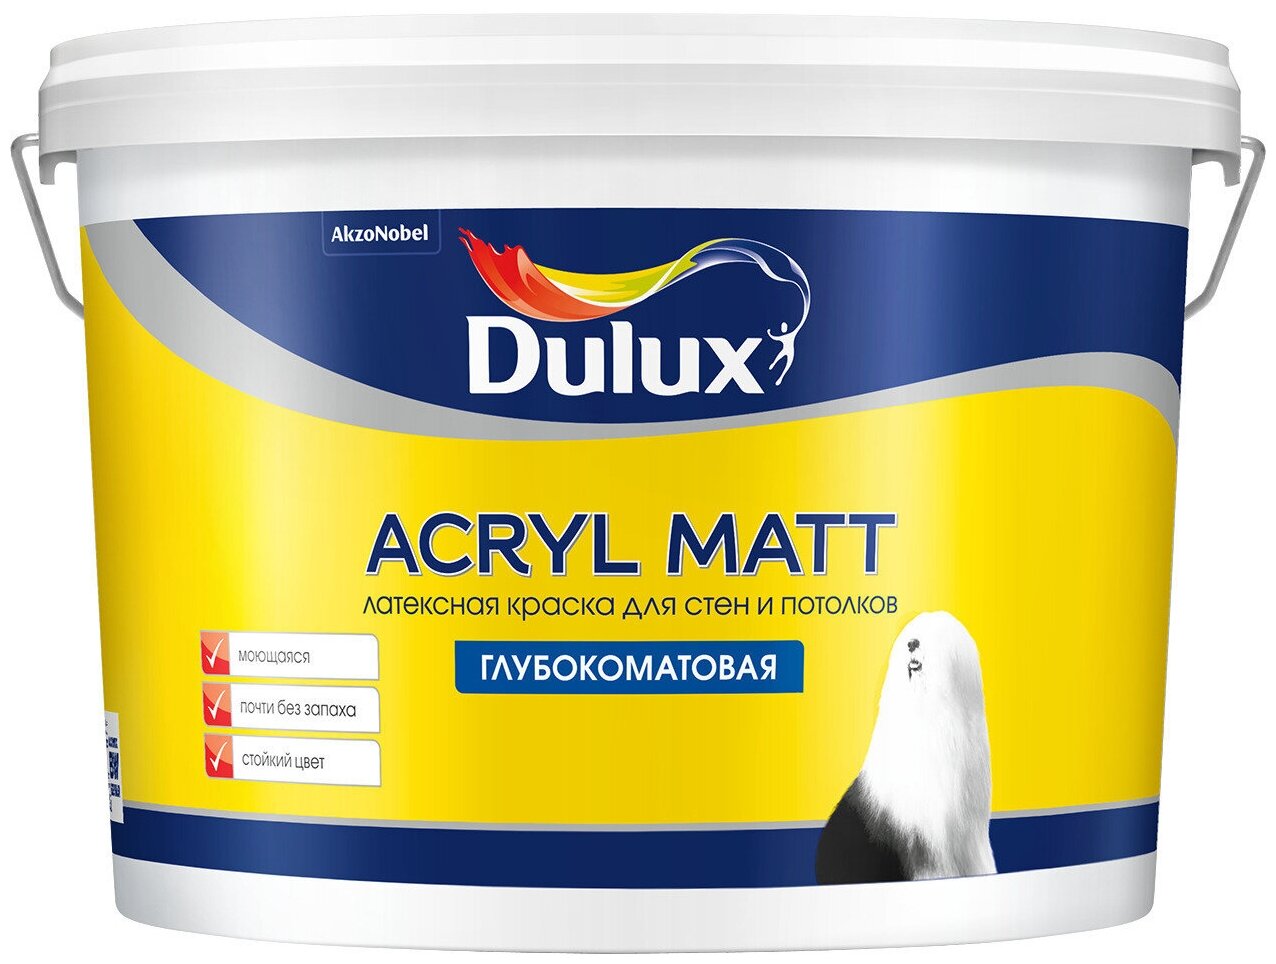 Dulux Acryl Matt 9л, , 60RR 62/086 мат